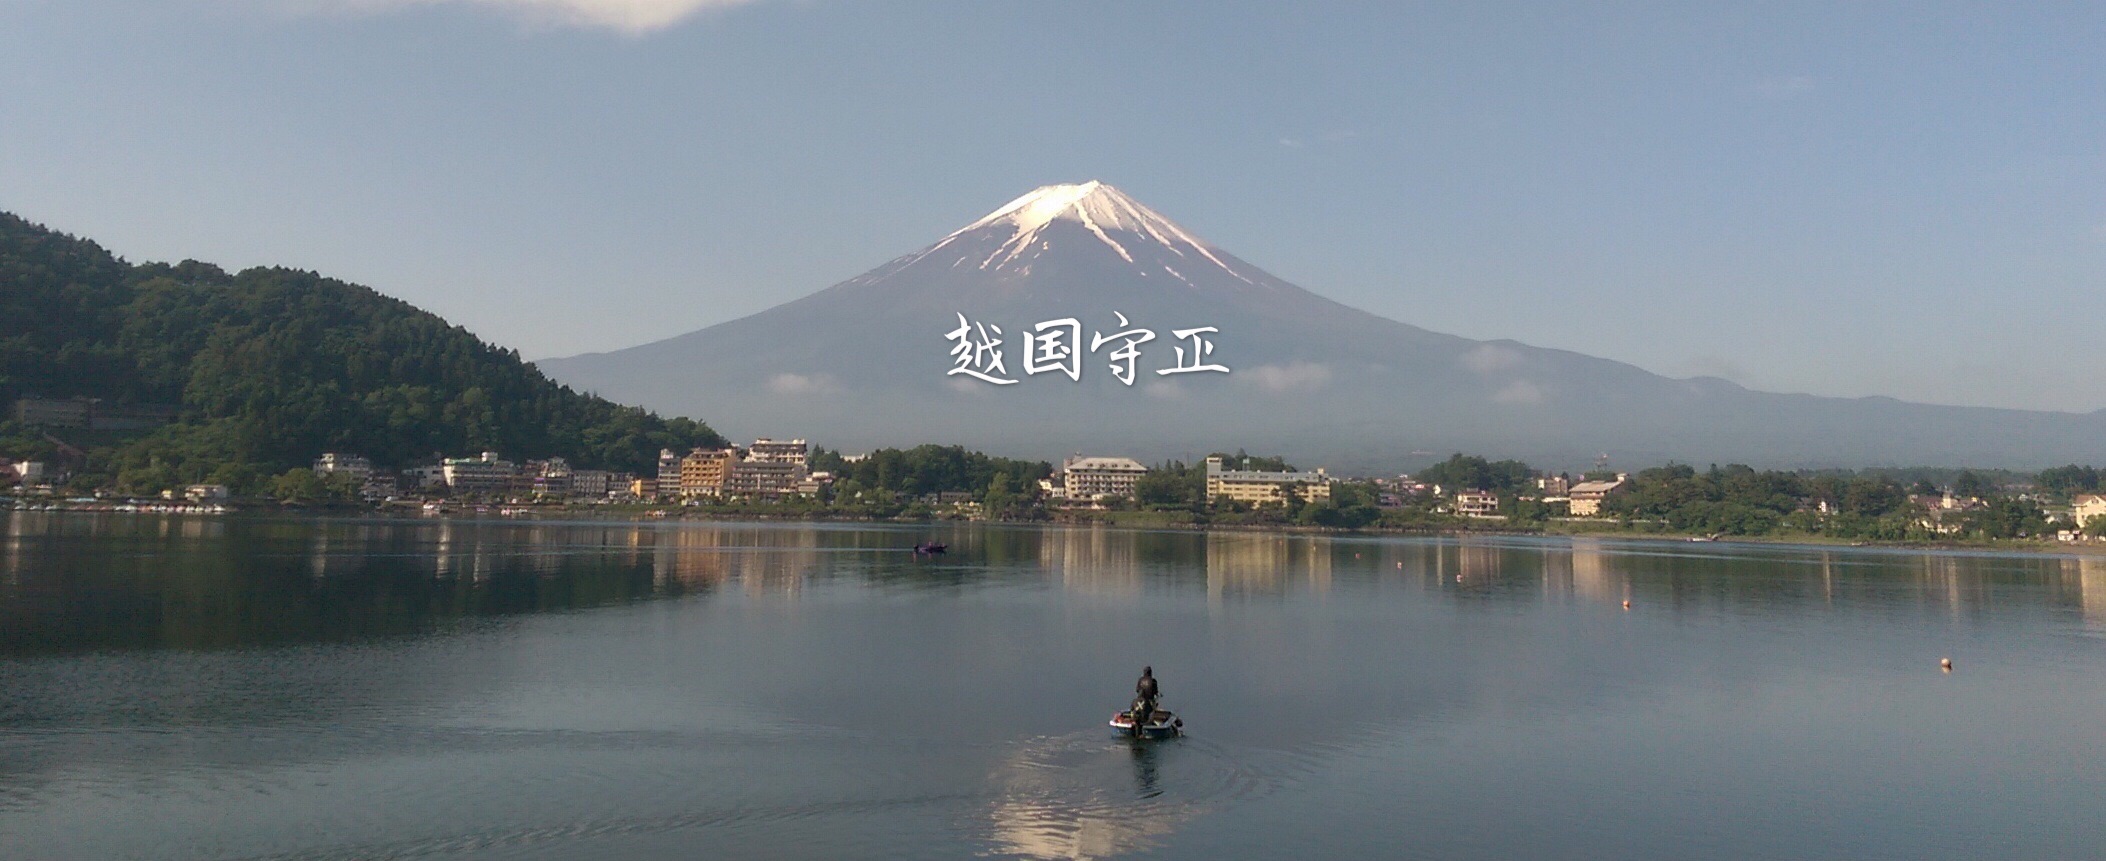 早安富士山